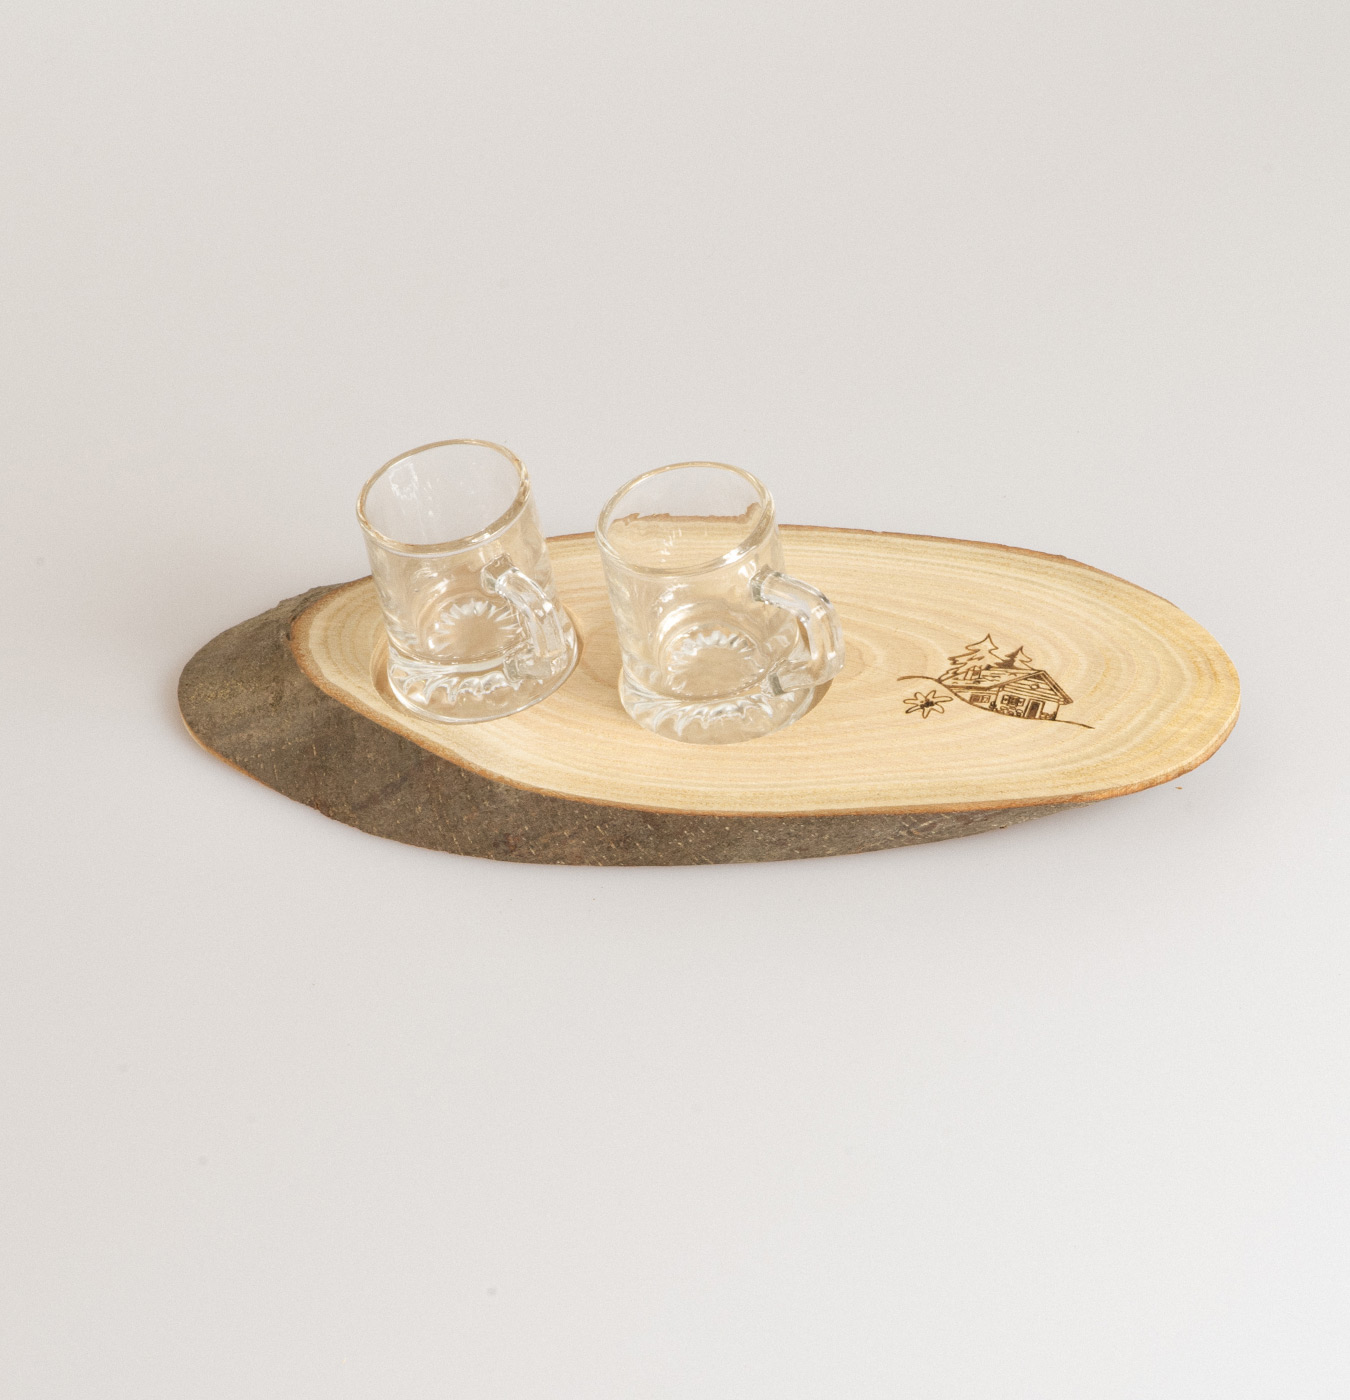 Portabicchierini in legno per ospitare piccoli bicchierini da grappa o tazzine da caffè.